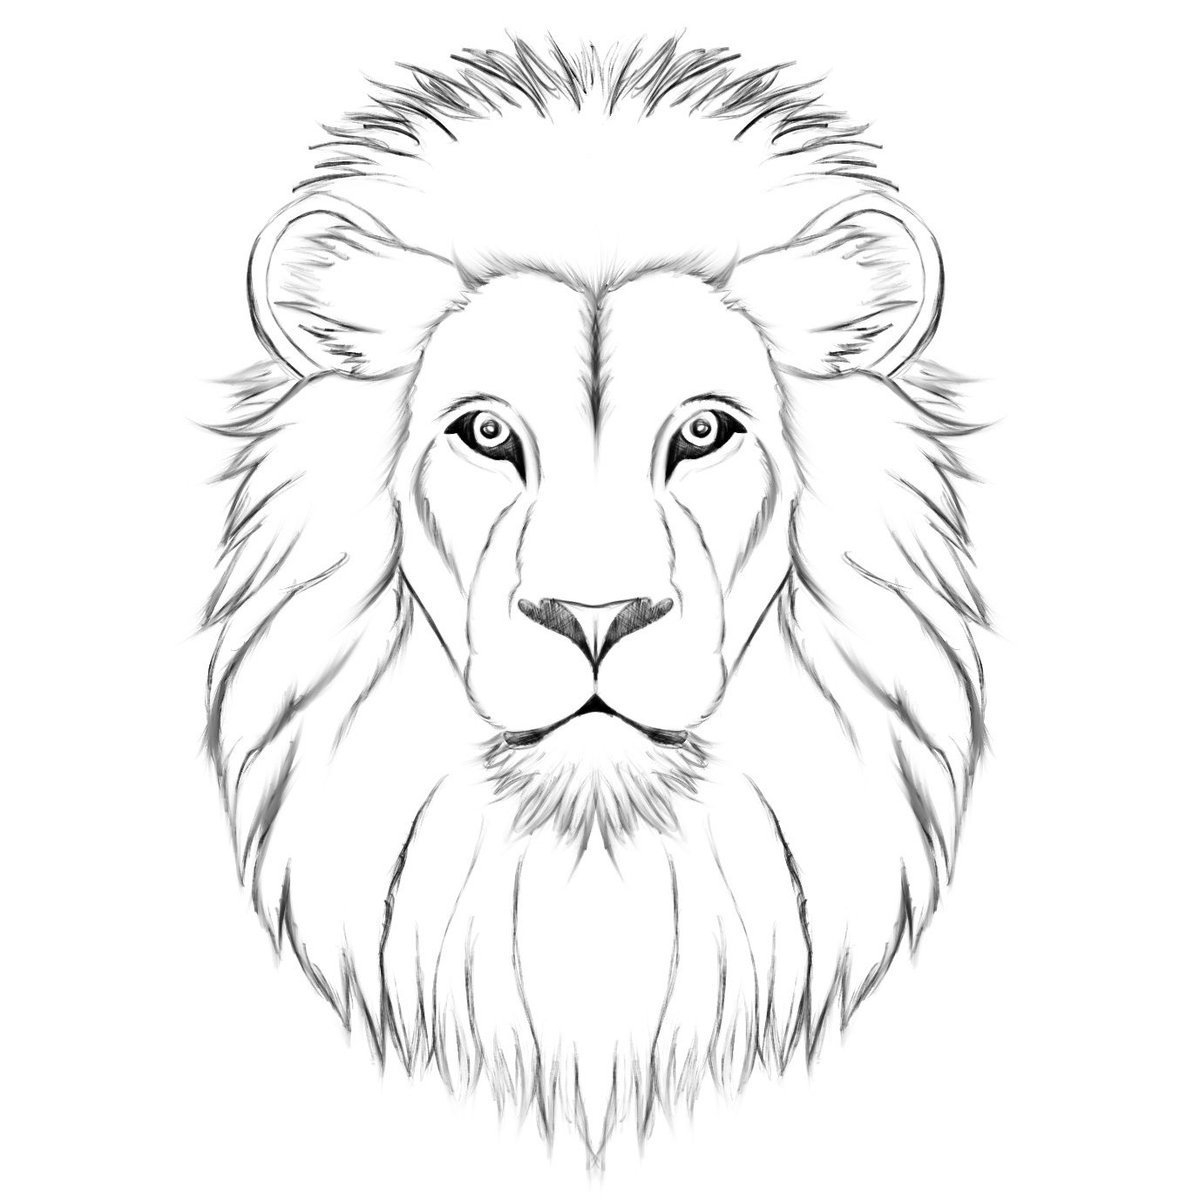 Как нарисовать голову льва карандашом, красками поэтапно? | Лев эскиз, Рисунки, Львы